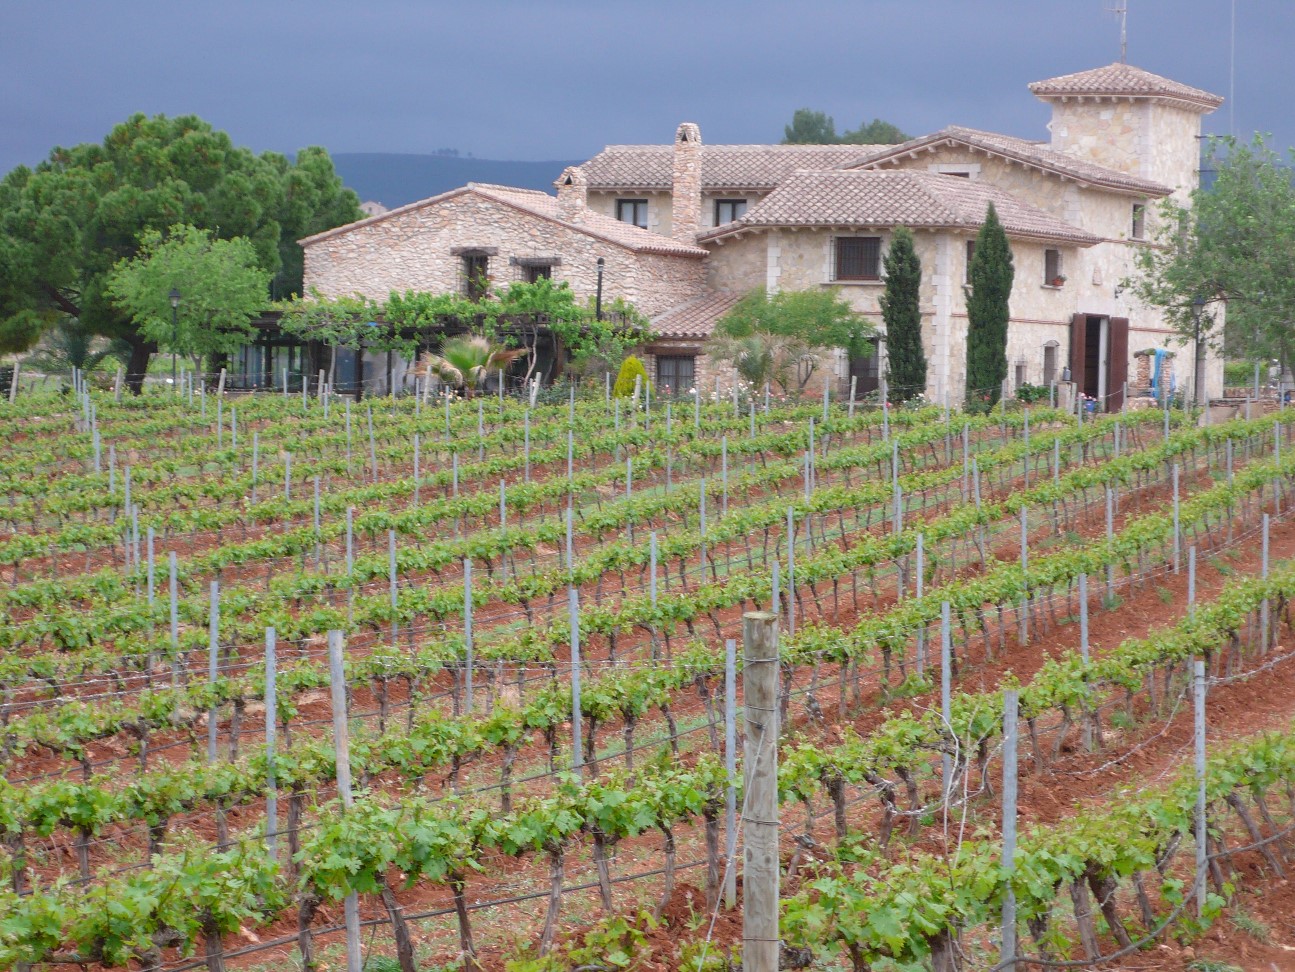 IGT Castellon bodega wine tour 